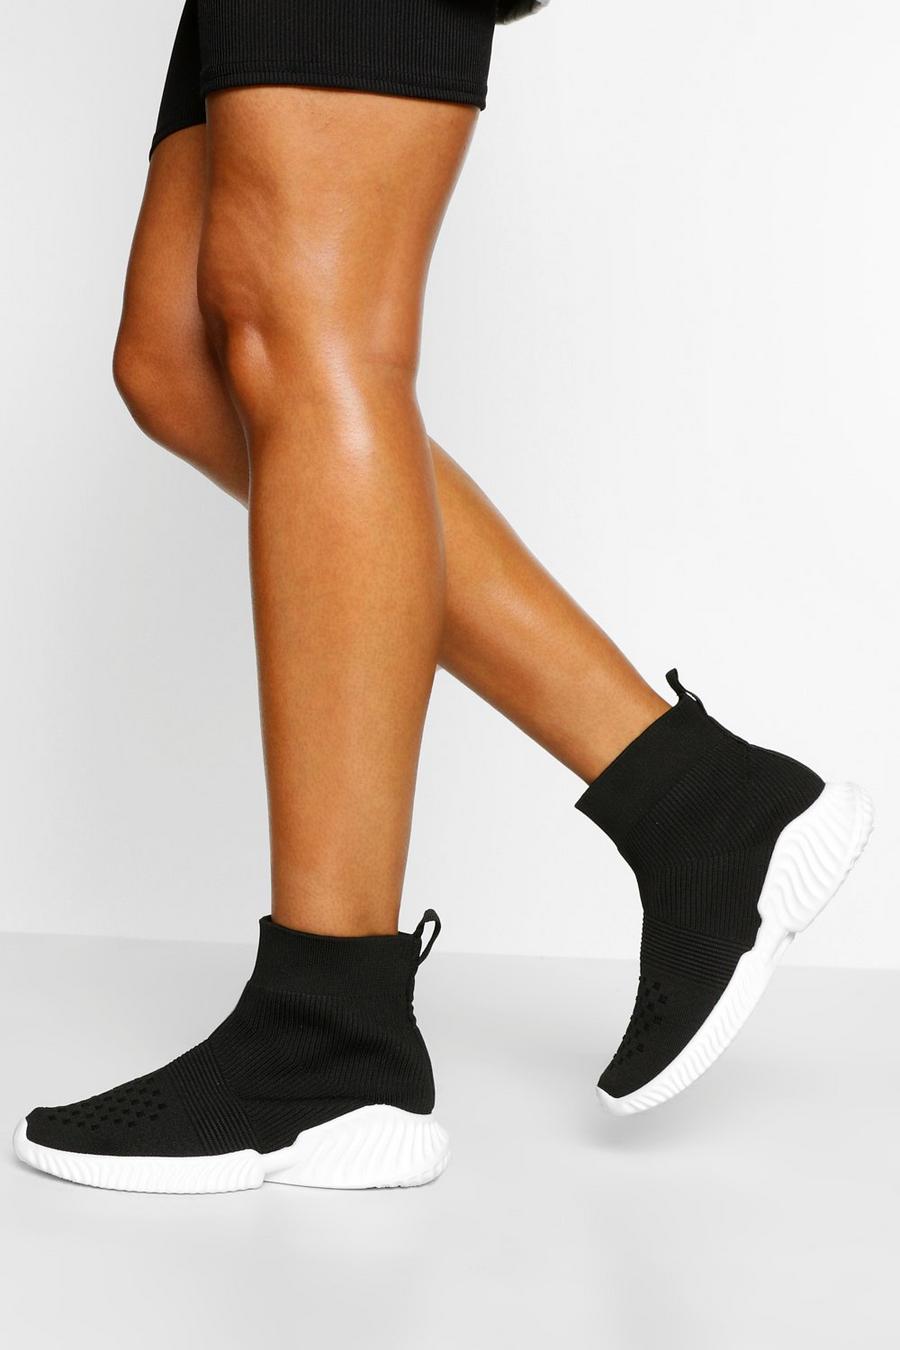 Zapatillas deportivas calcetín de tela con suela gruesa, Negro